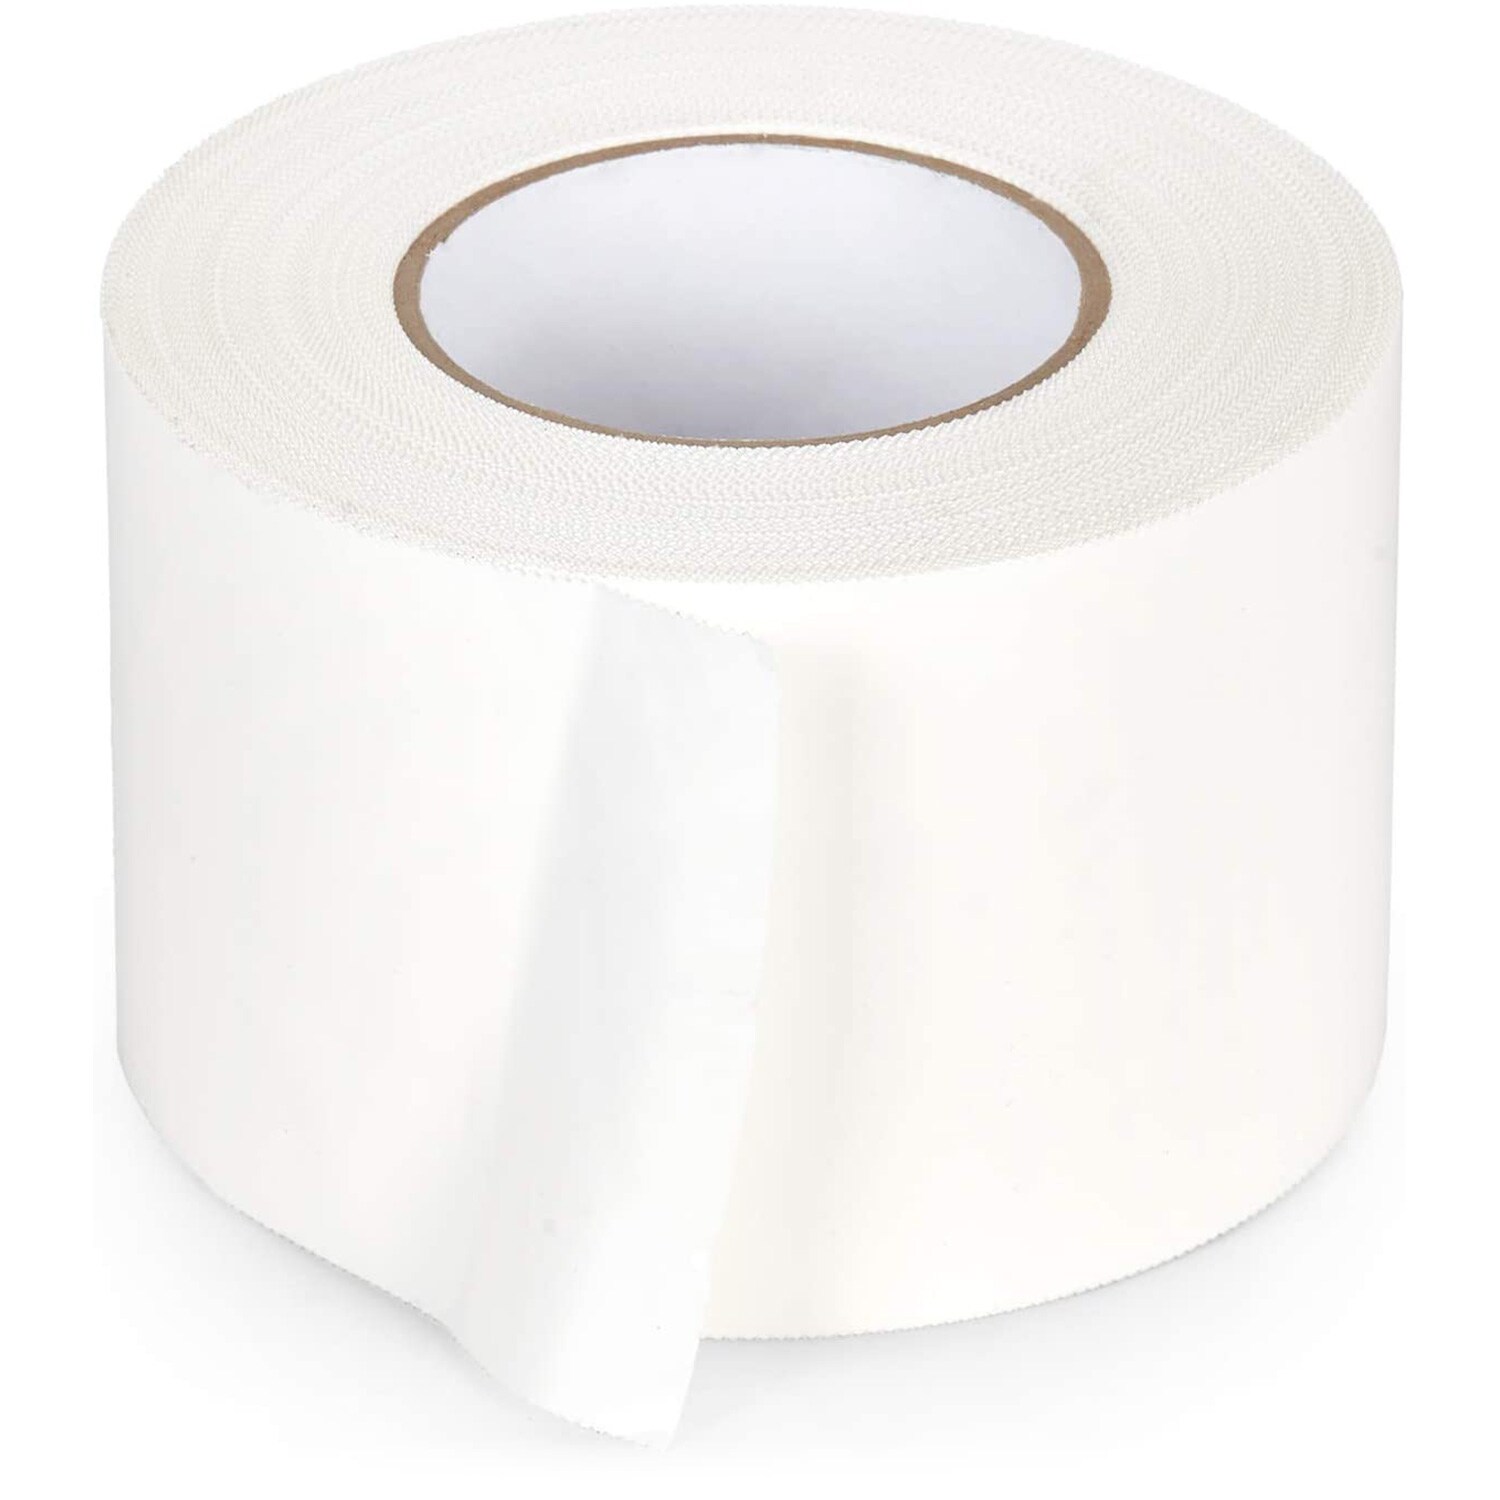 APOC® White Tape Heavy Duty All Purpose Tape & Sealant